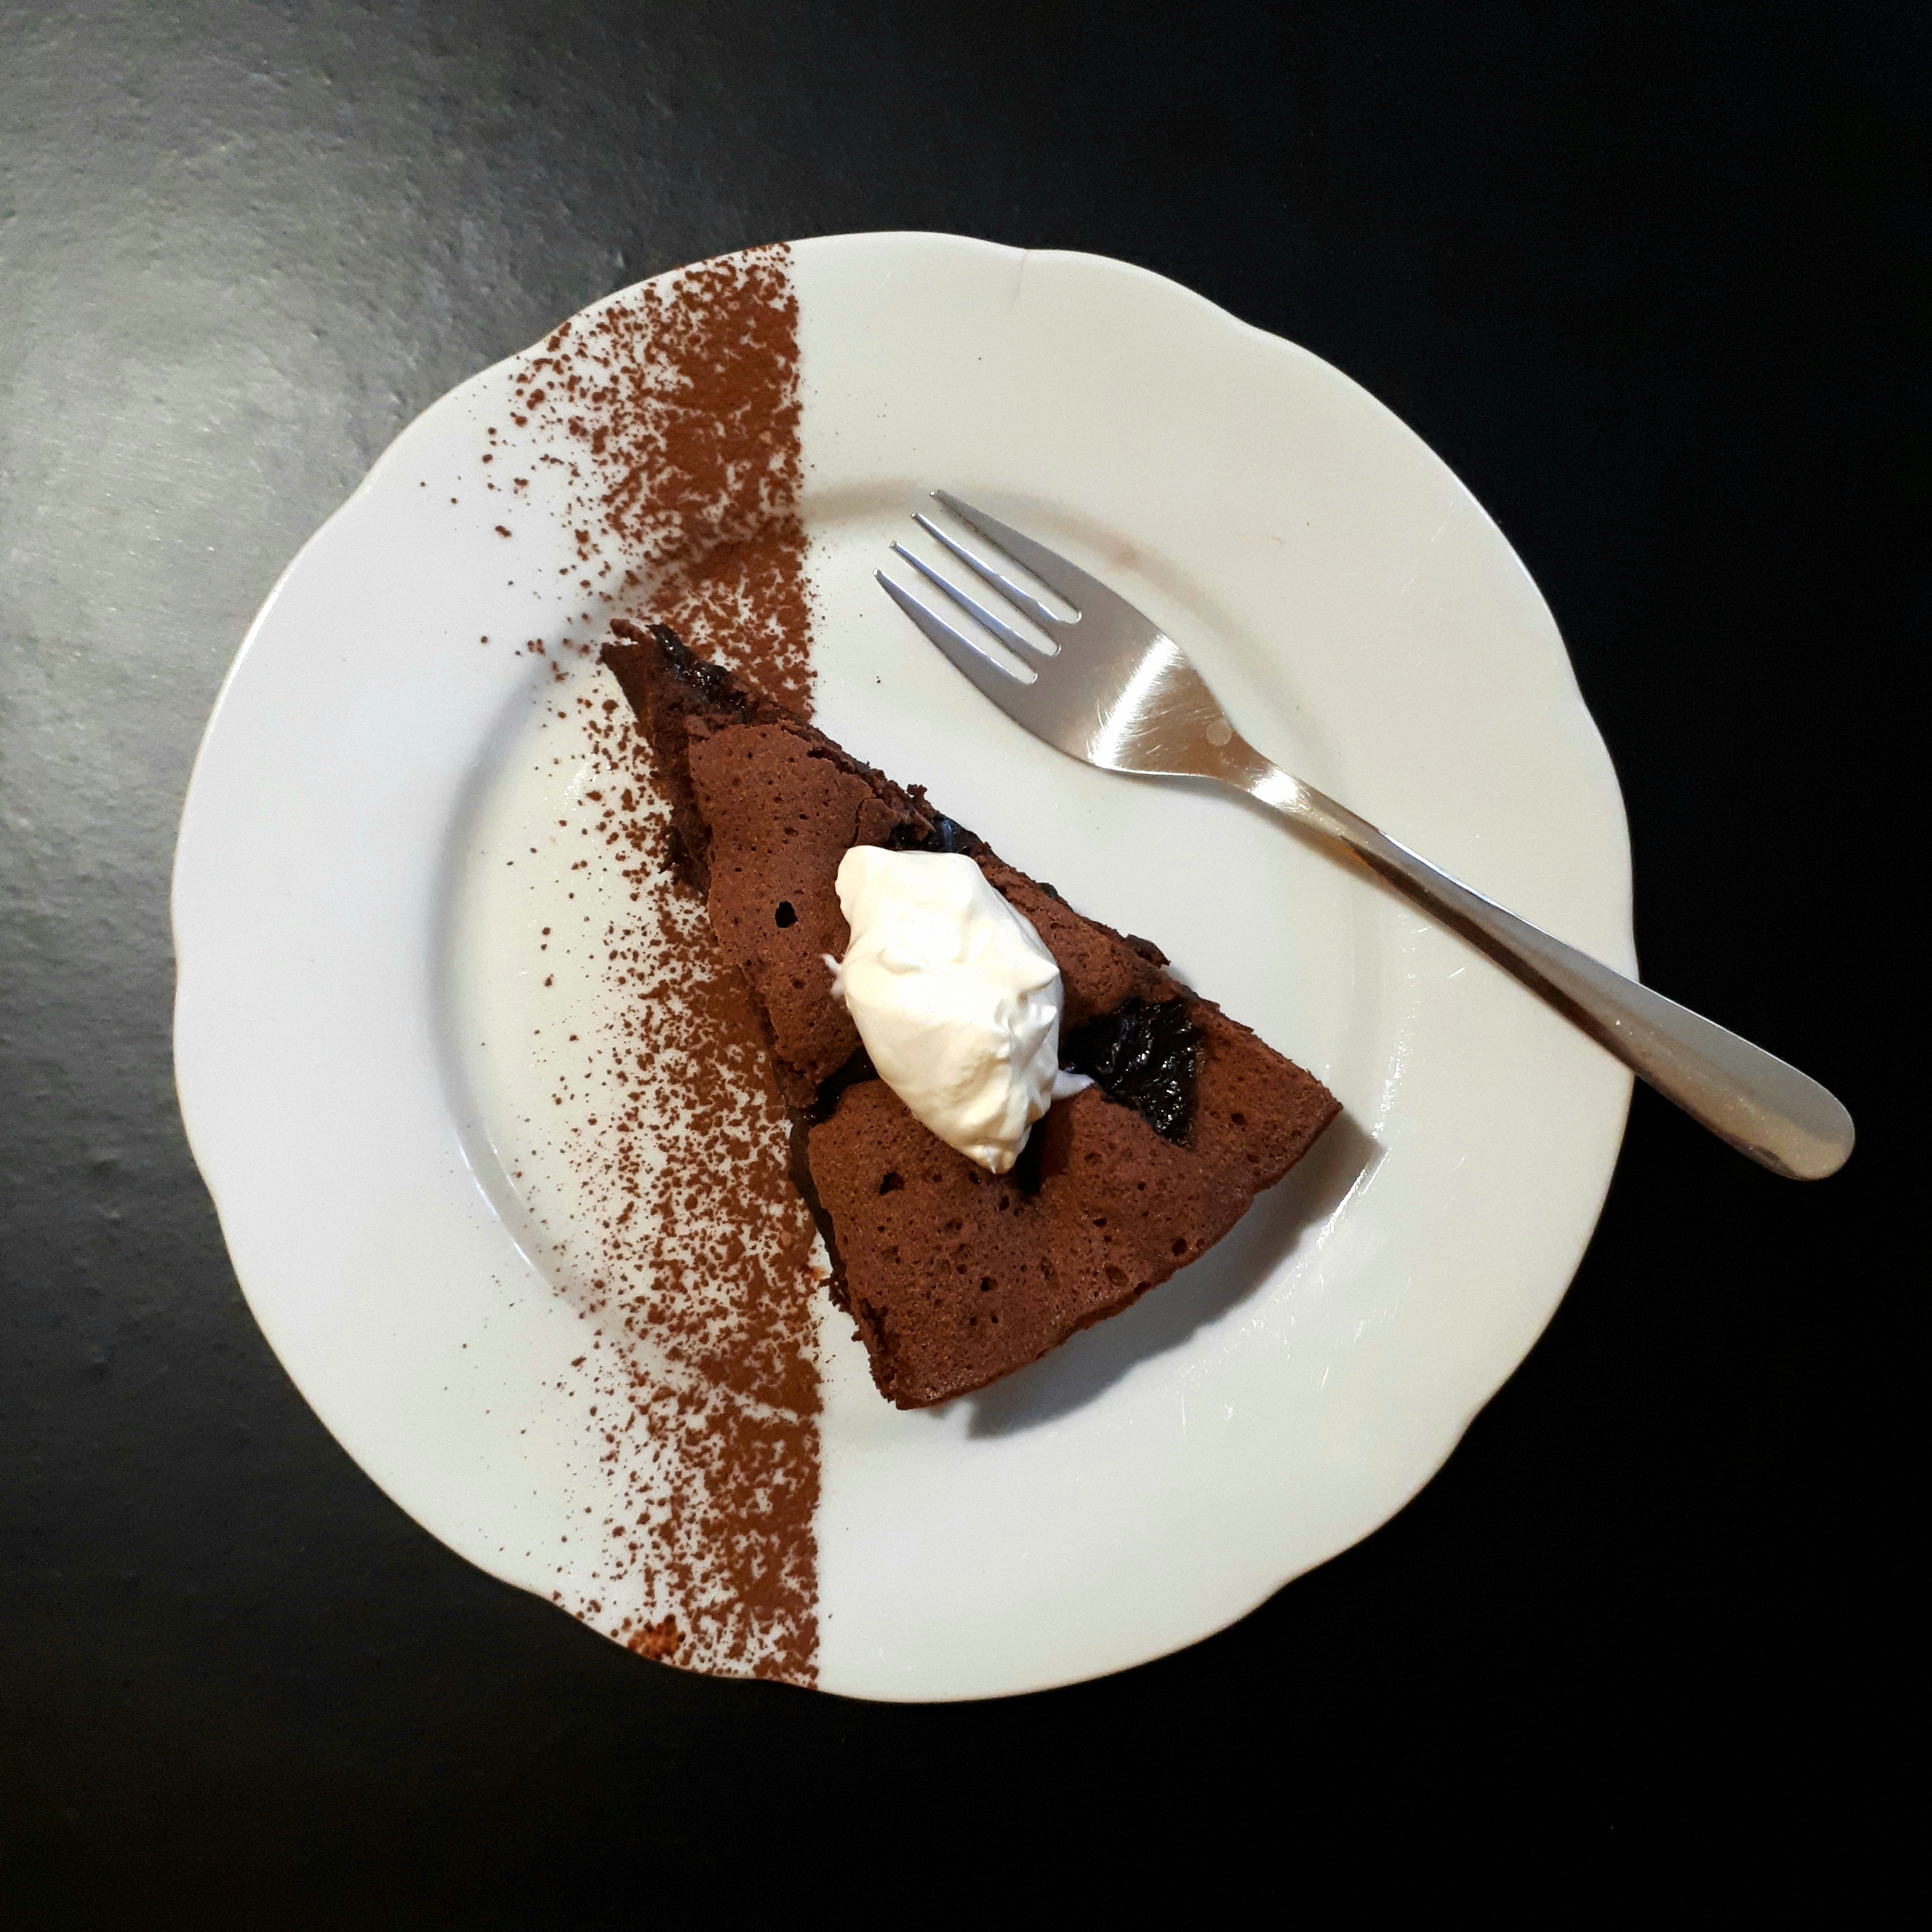 Kúsok čokoládového koláča so sušenými slivkami navrchu kopček kyslej smotany na bielom tanieri posypanom kakaom nerezová dezertná lyžička na čiernom povrchu